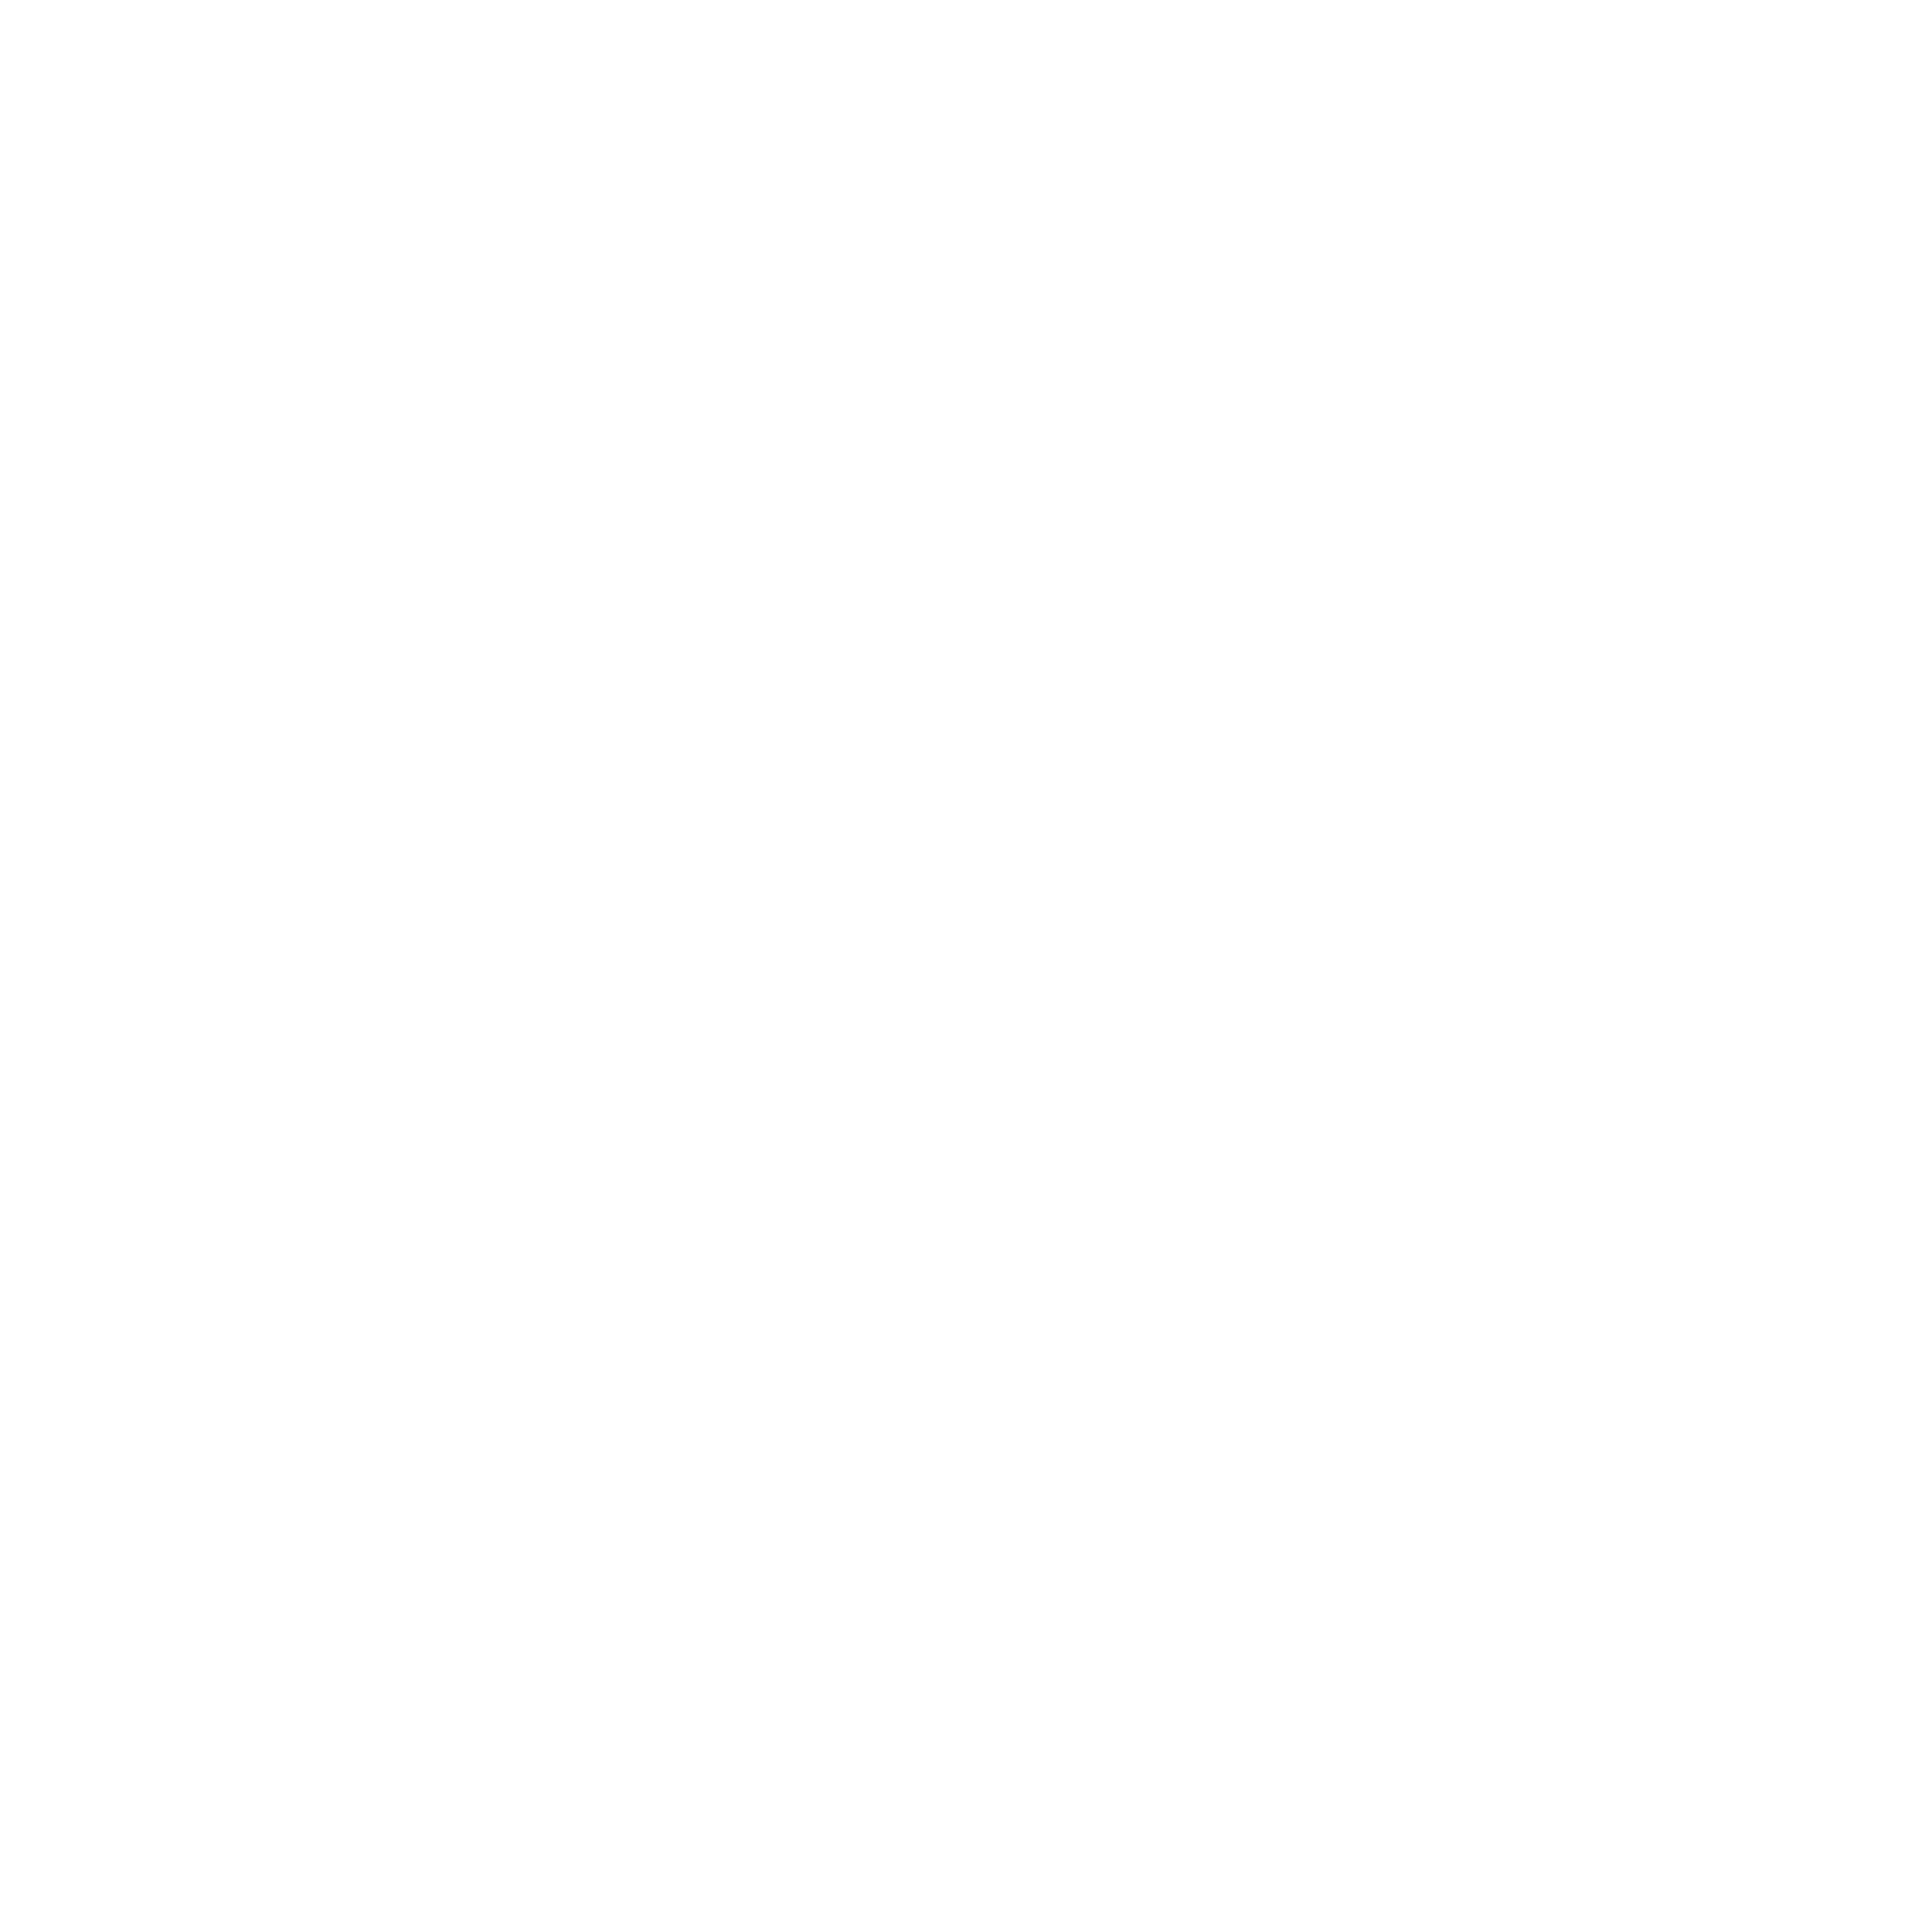 Clough Cattle